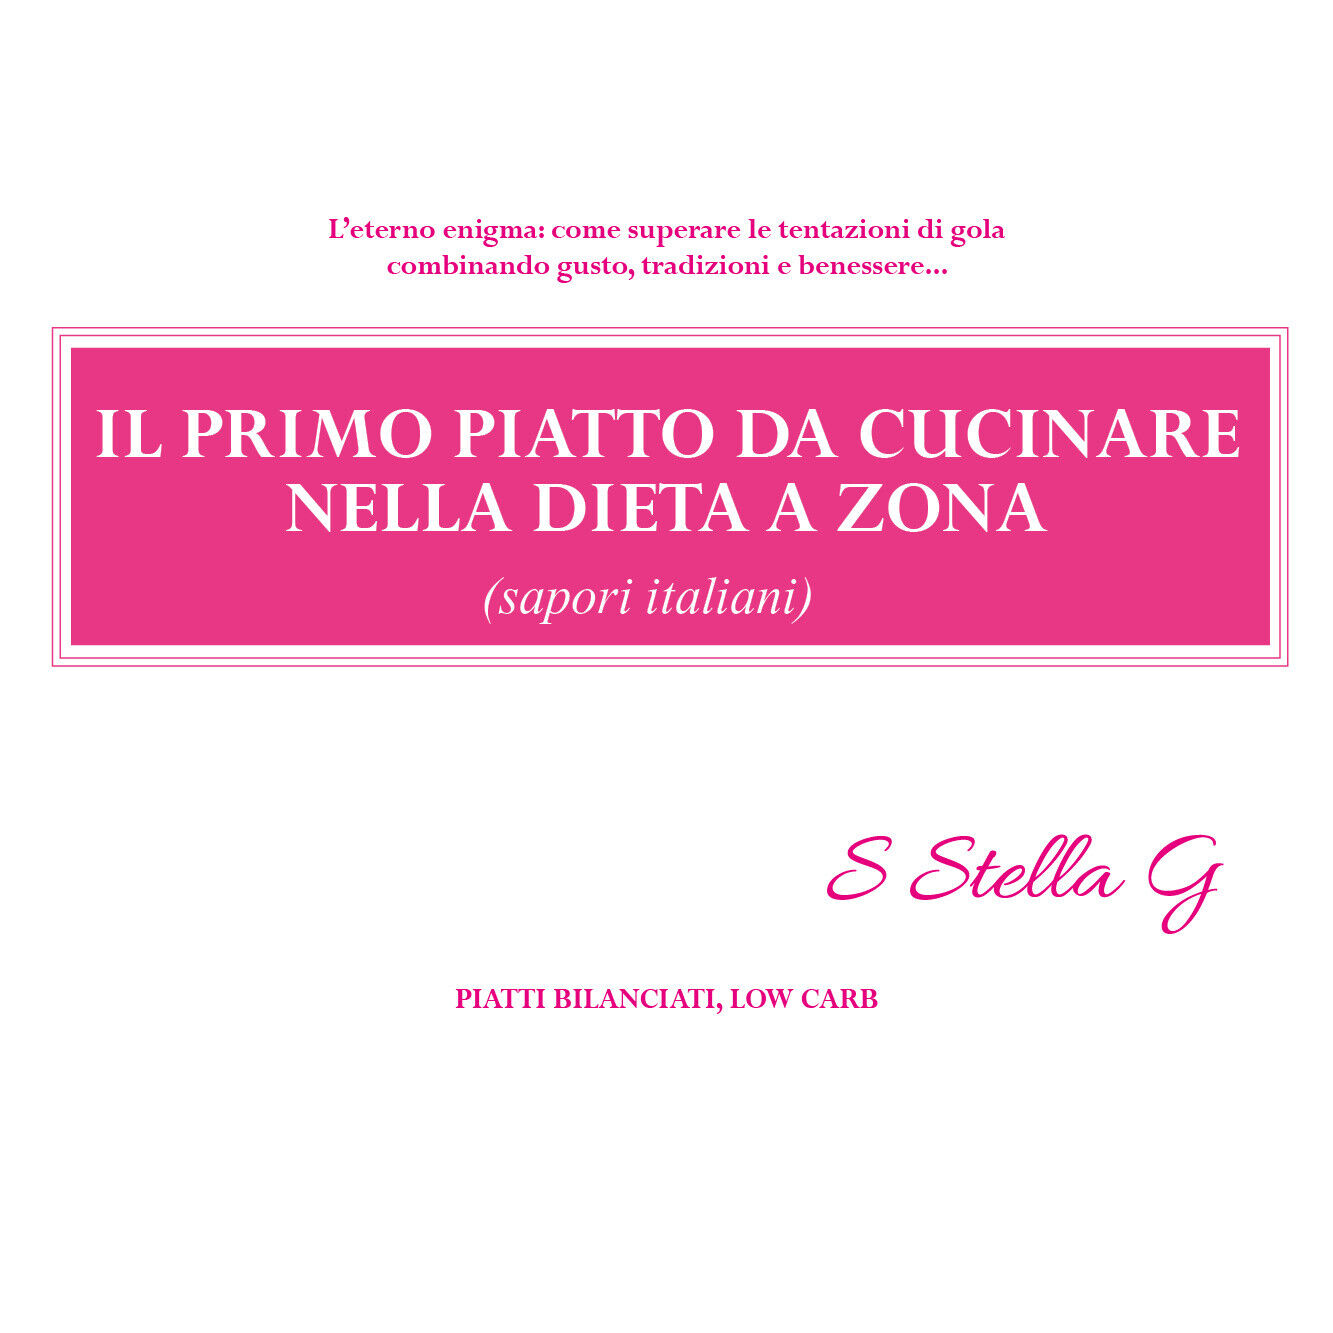 Il primo piatto da cucinare nella dieta a zona (sapori italiani) di Sstellag,  2 libro usato